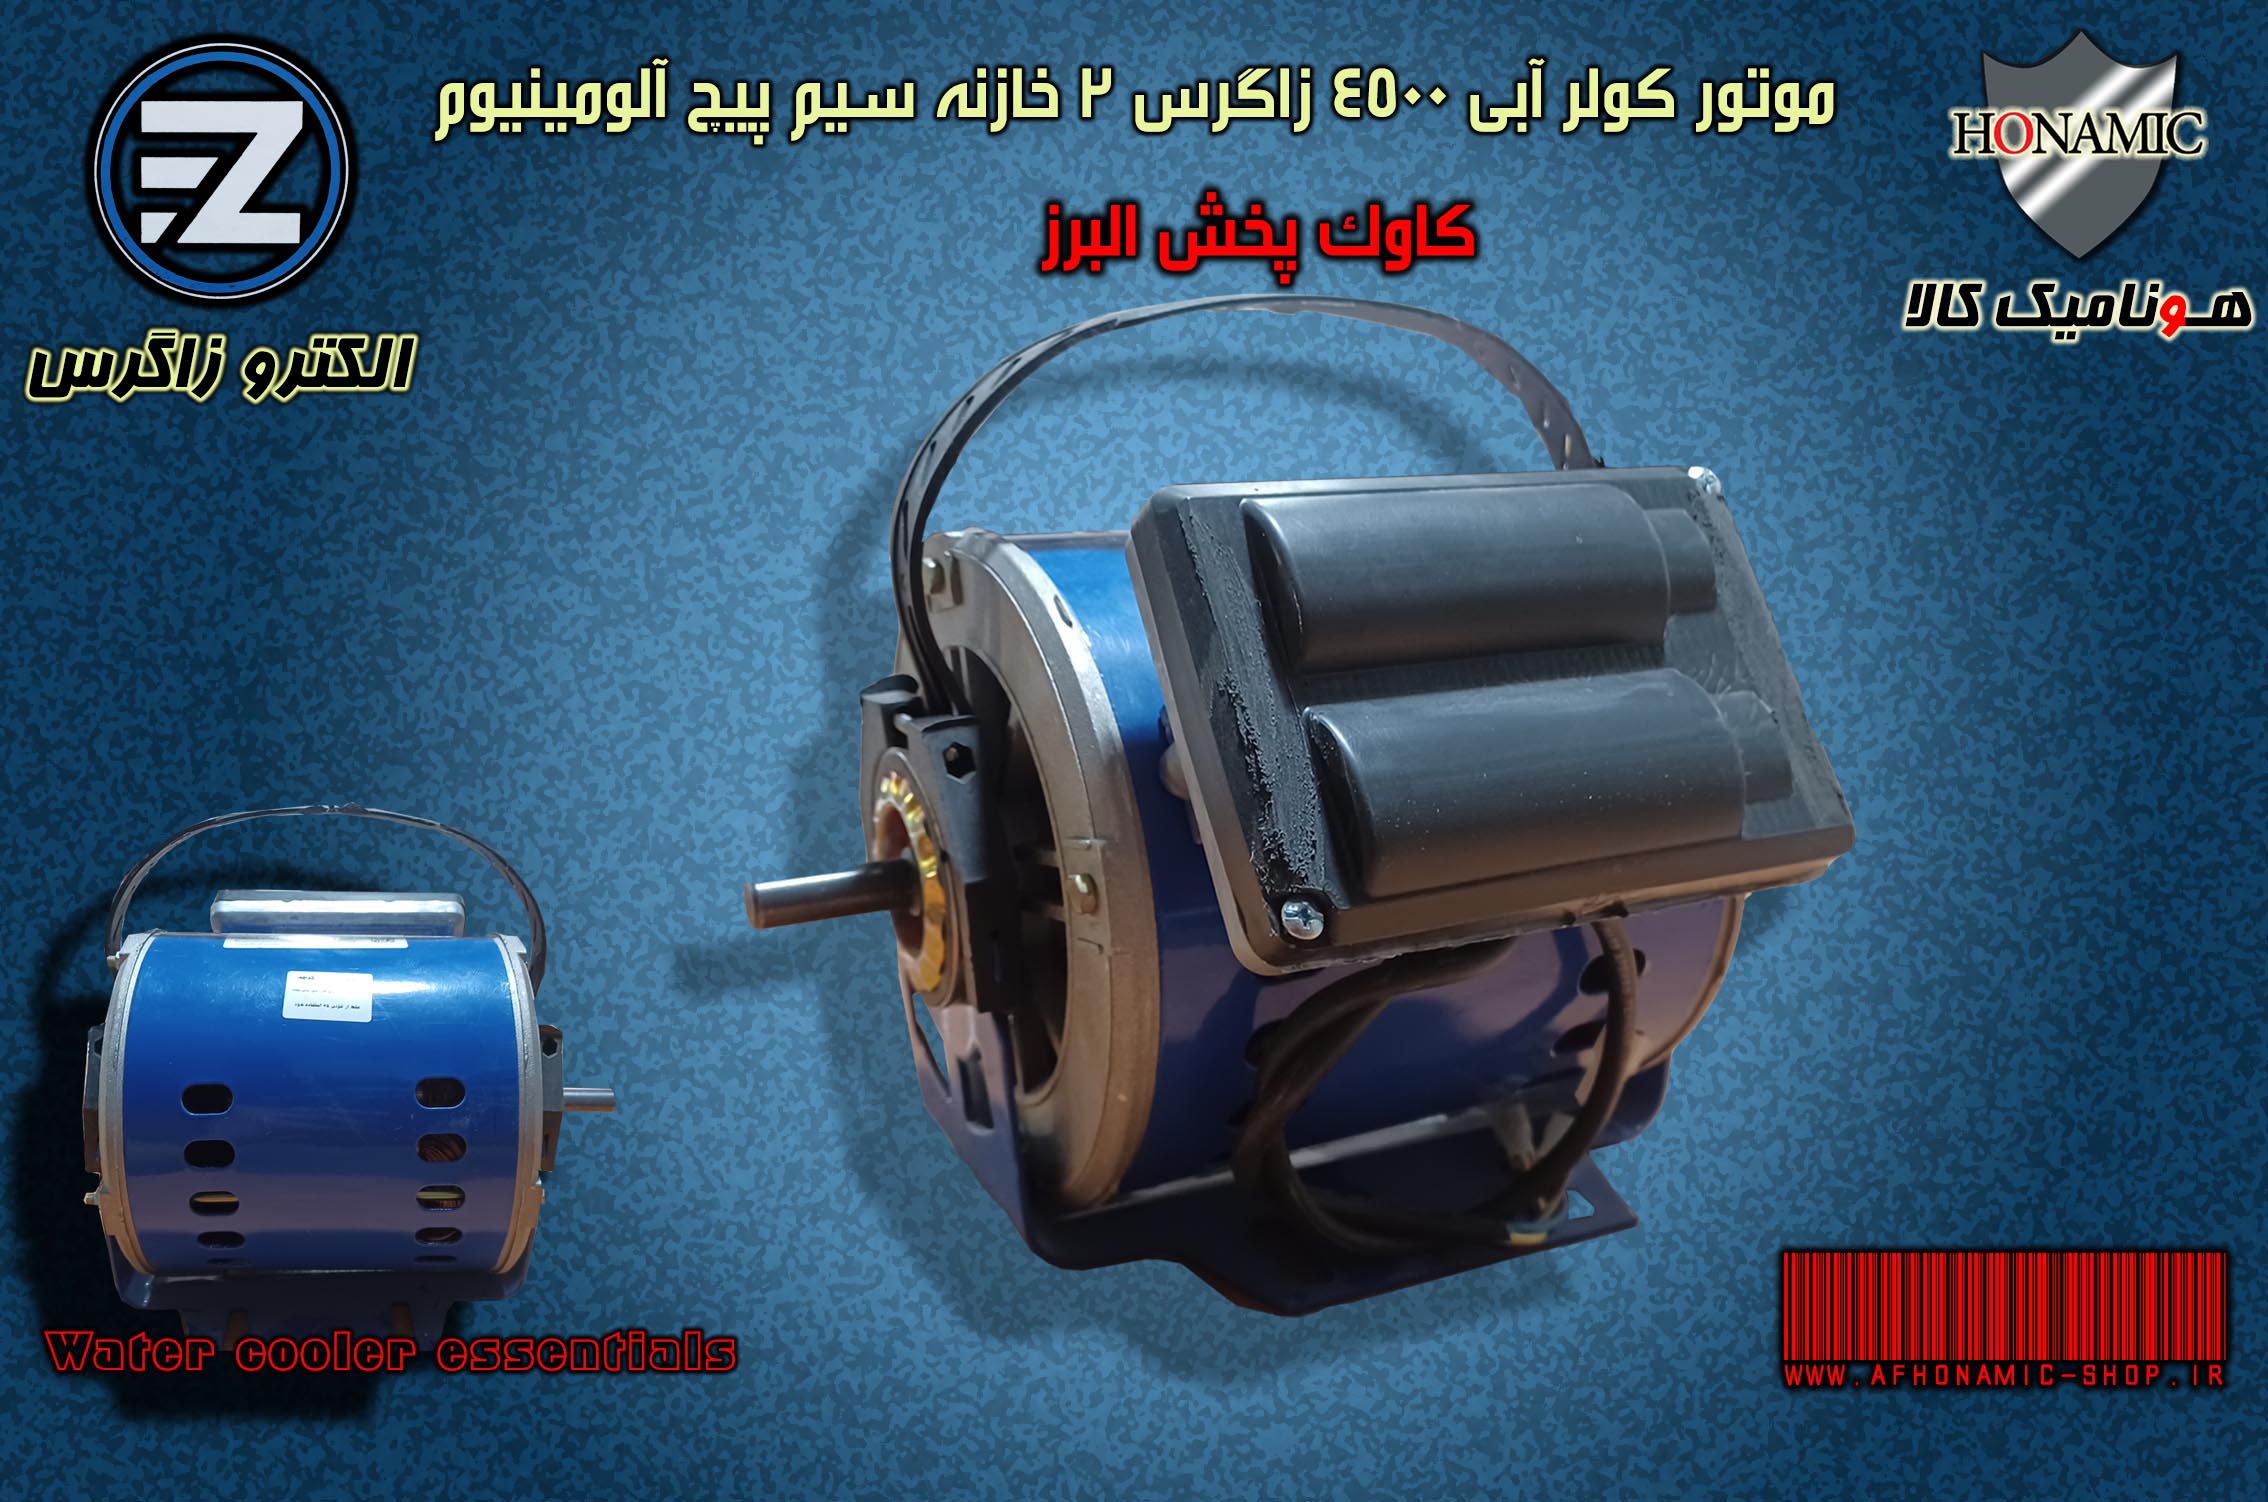 موتور کولر آبی 4500  الکترو زاگرس با سیم پیچ آلومینیوم اصلی یک بار مصرف